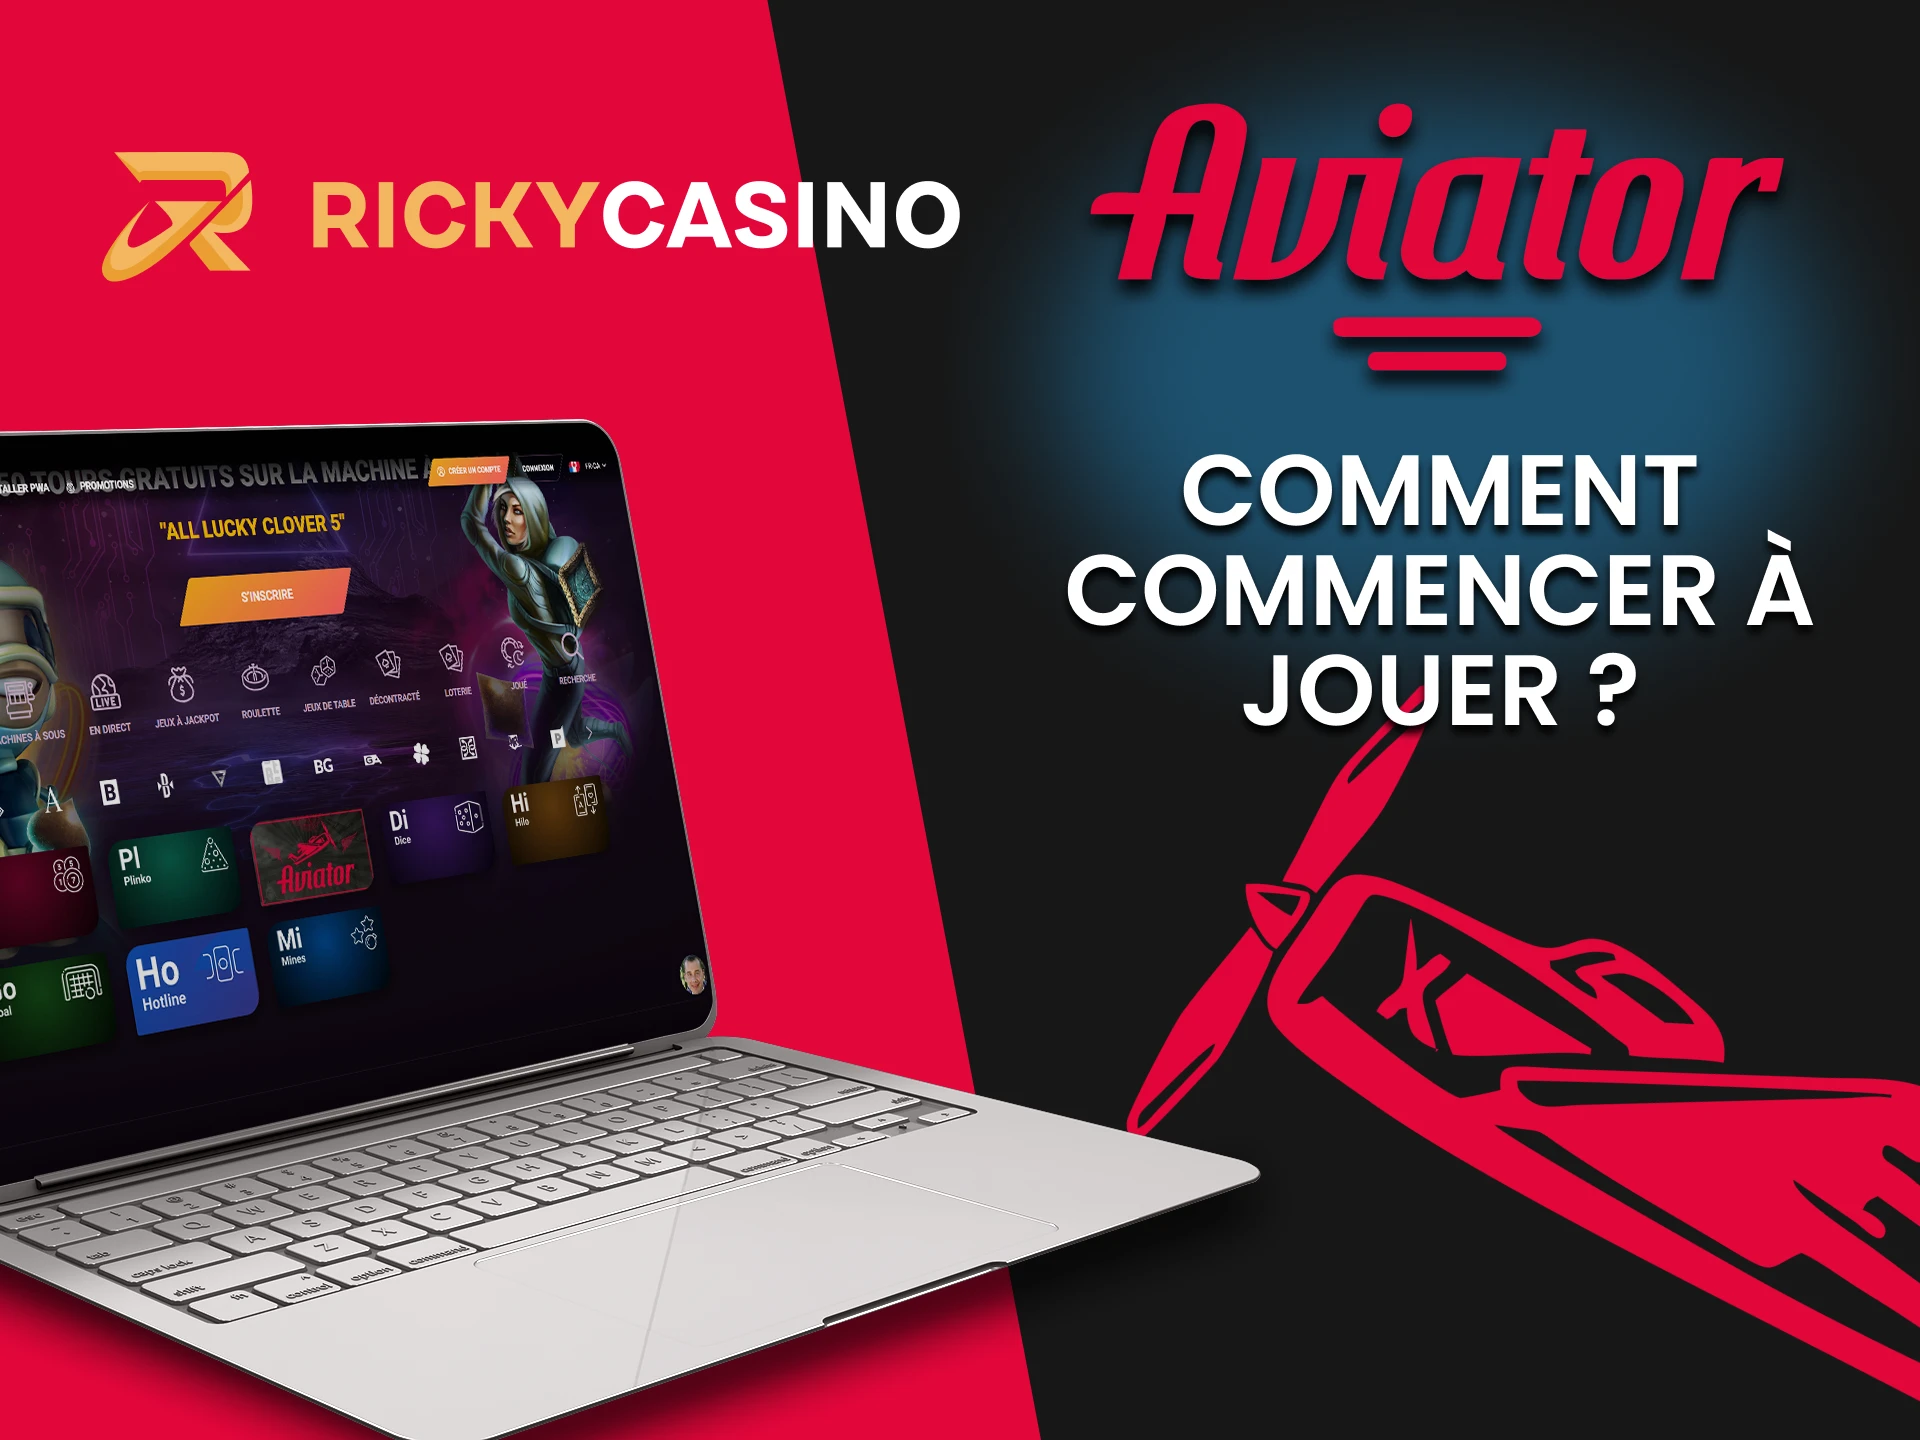 Sélectionnez la section casino de Ricky Casino pour jouer à Aviator.